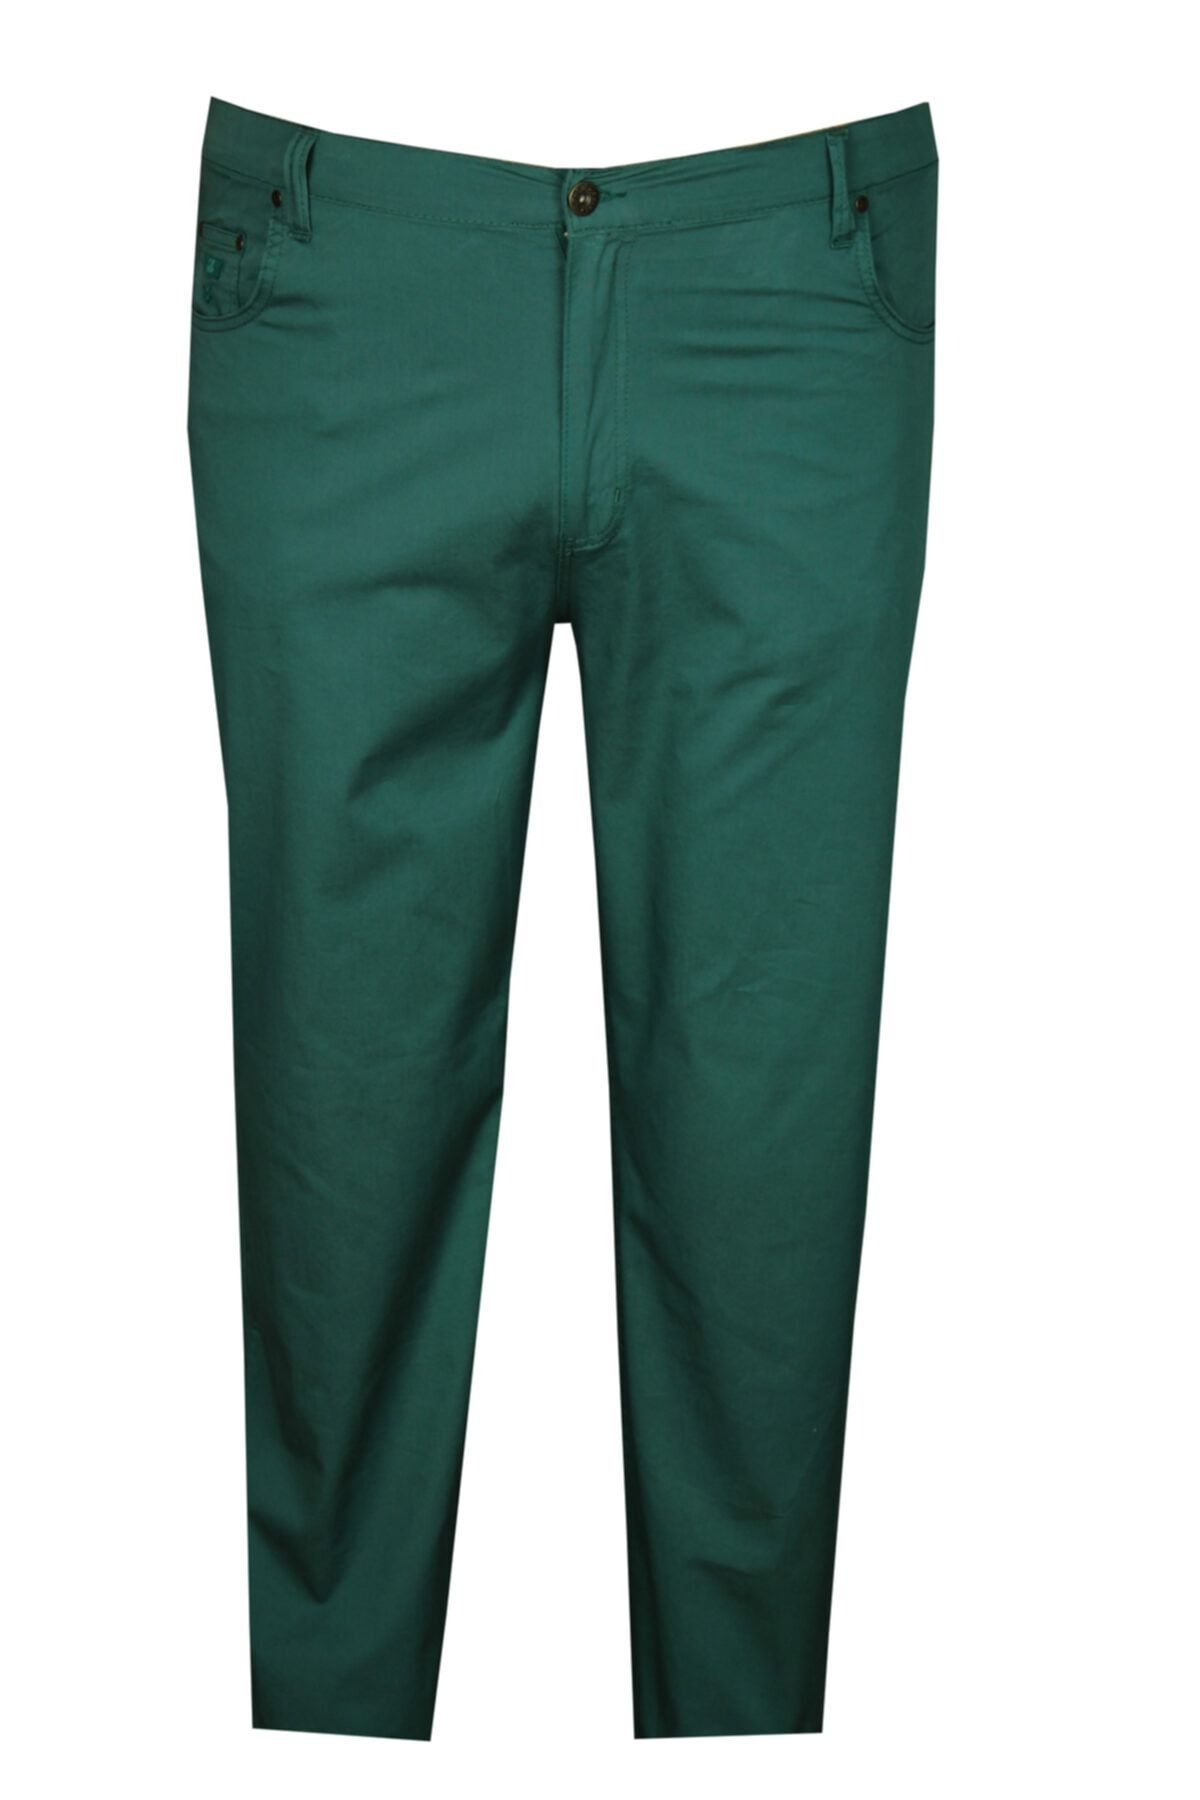 FaLa Jeans Erkek Yeşil Büyük Beden Likralı Keten Pantolon 97147